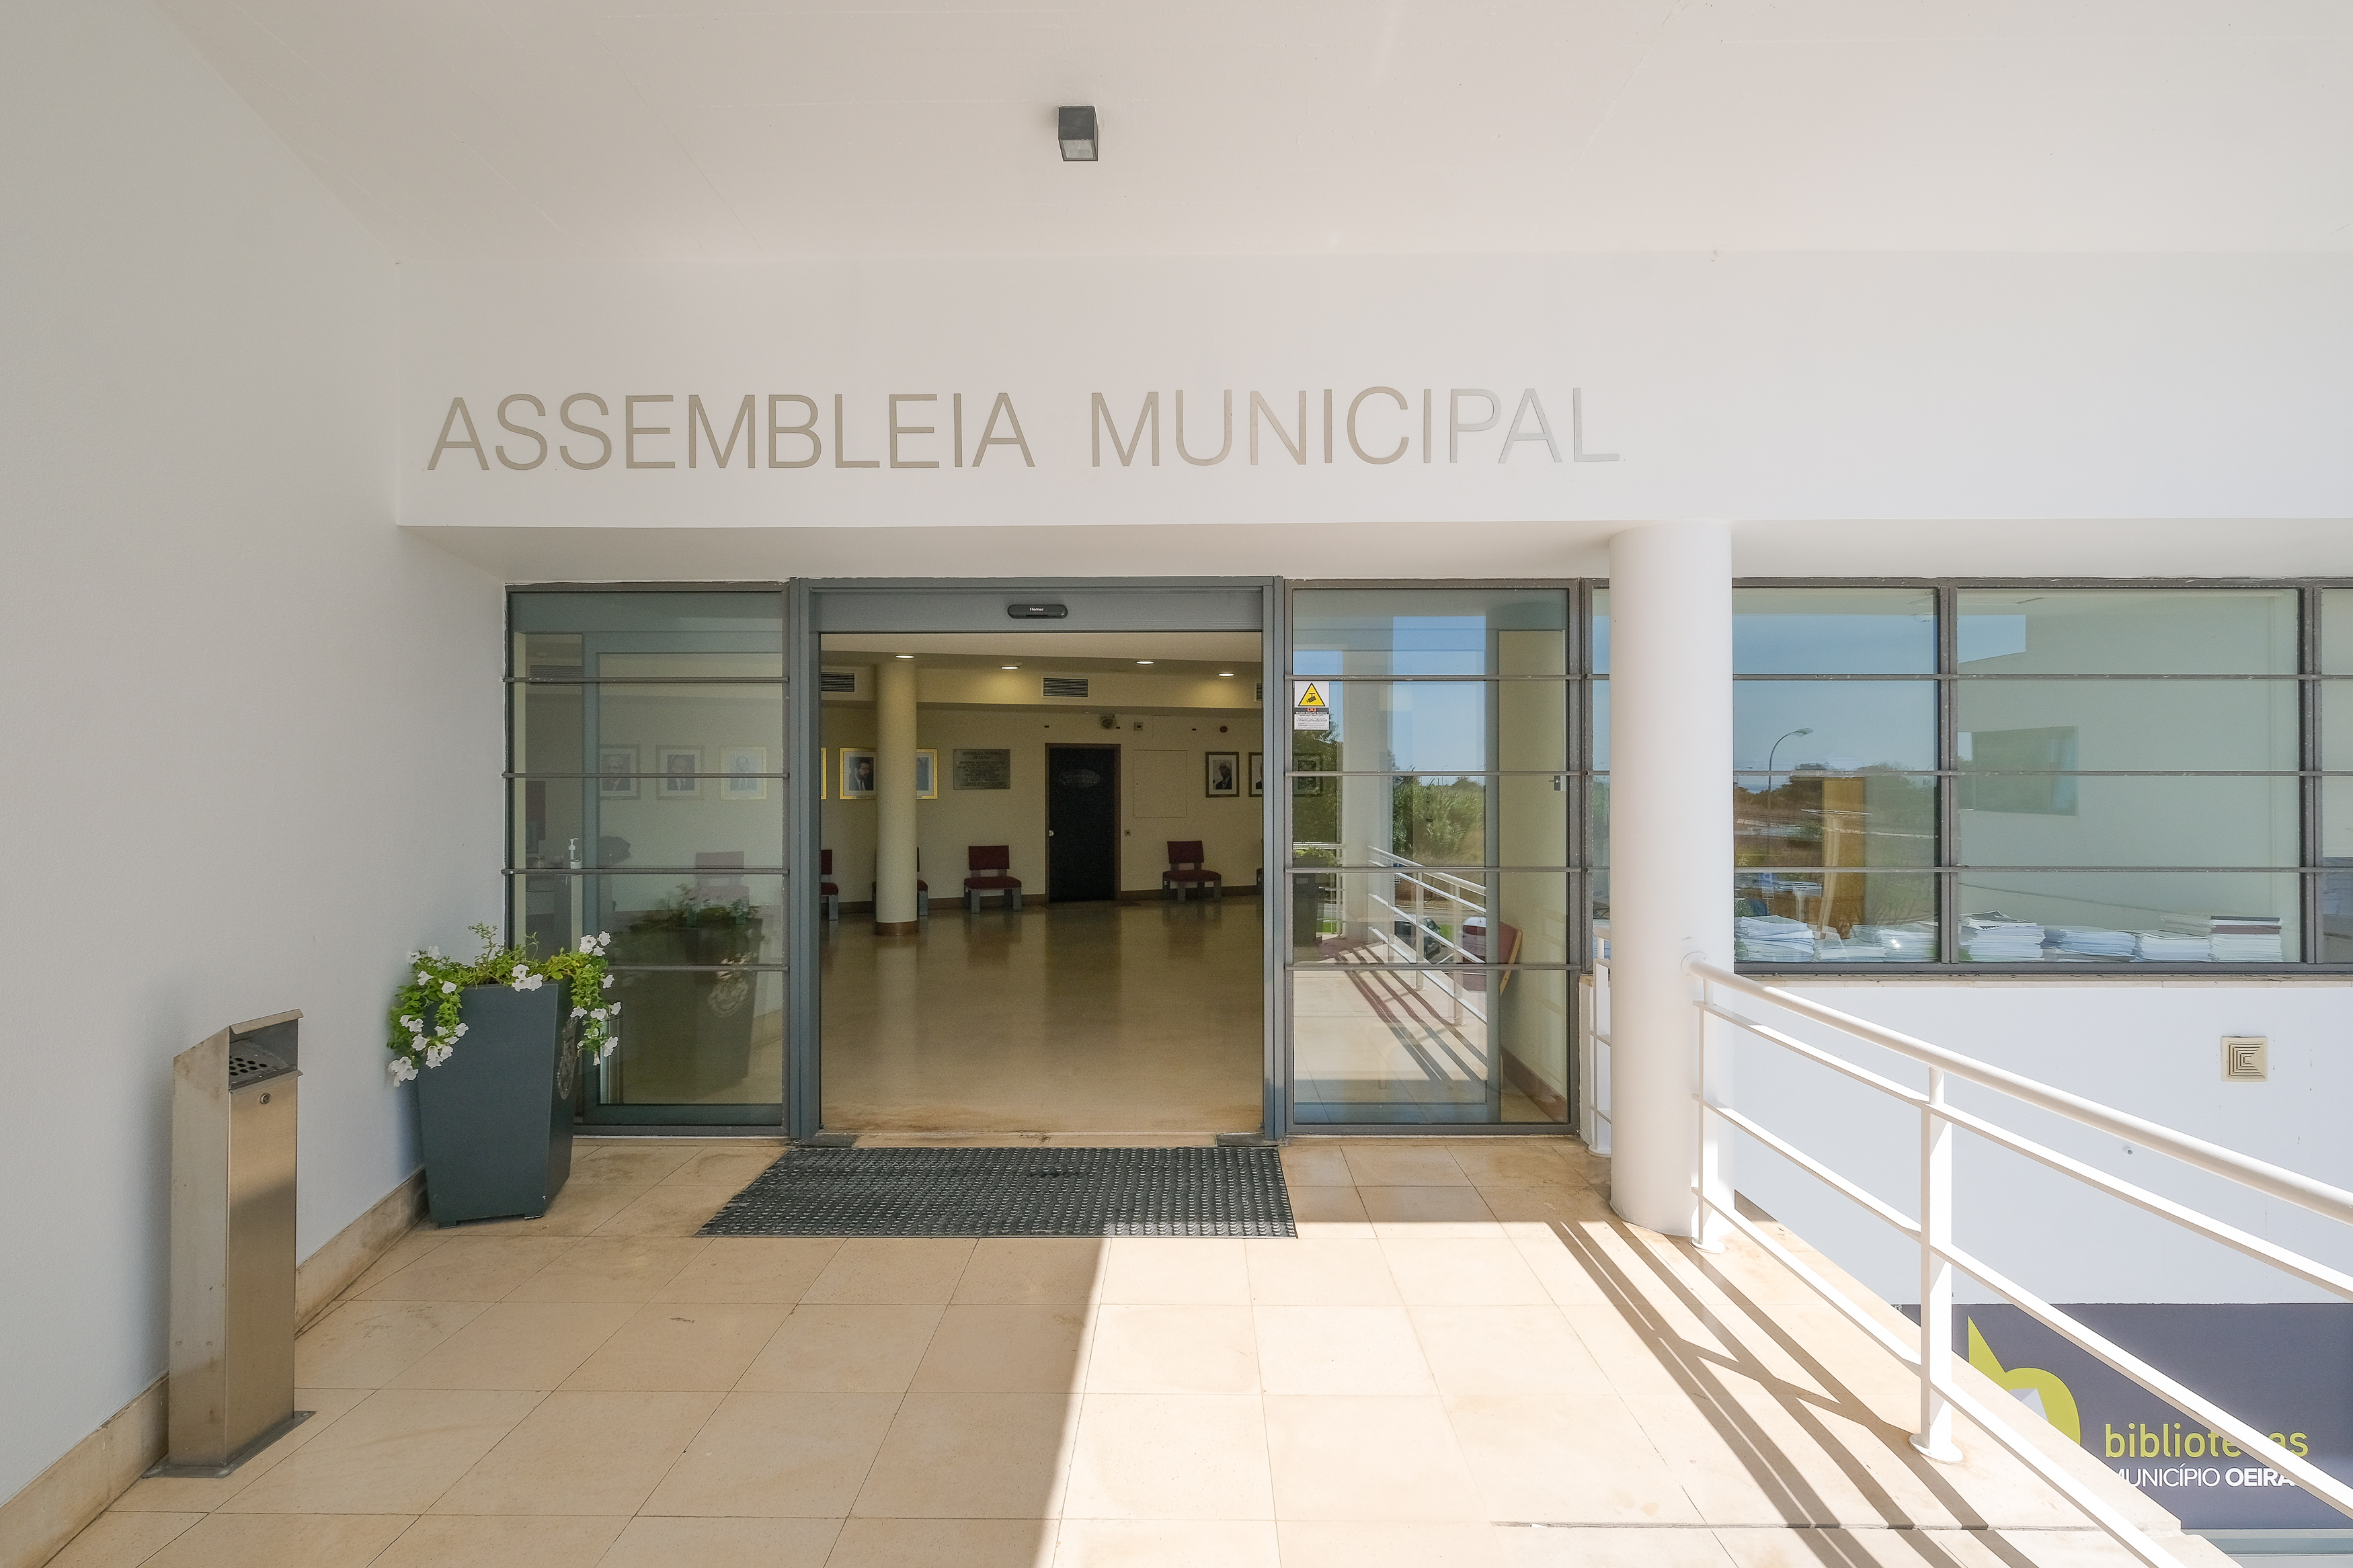 Entrada do Edifício da Biblioeteca Municipal de Oeiras